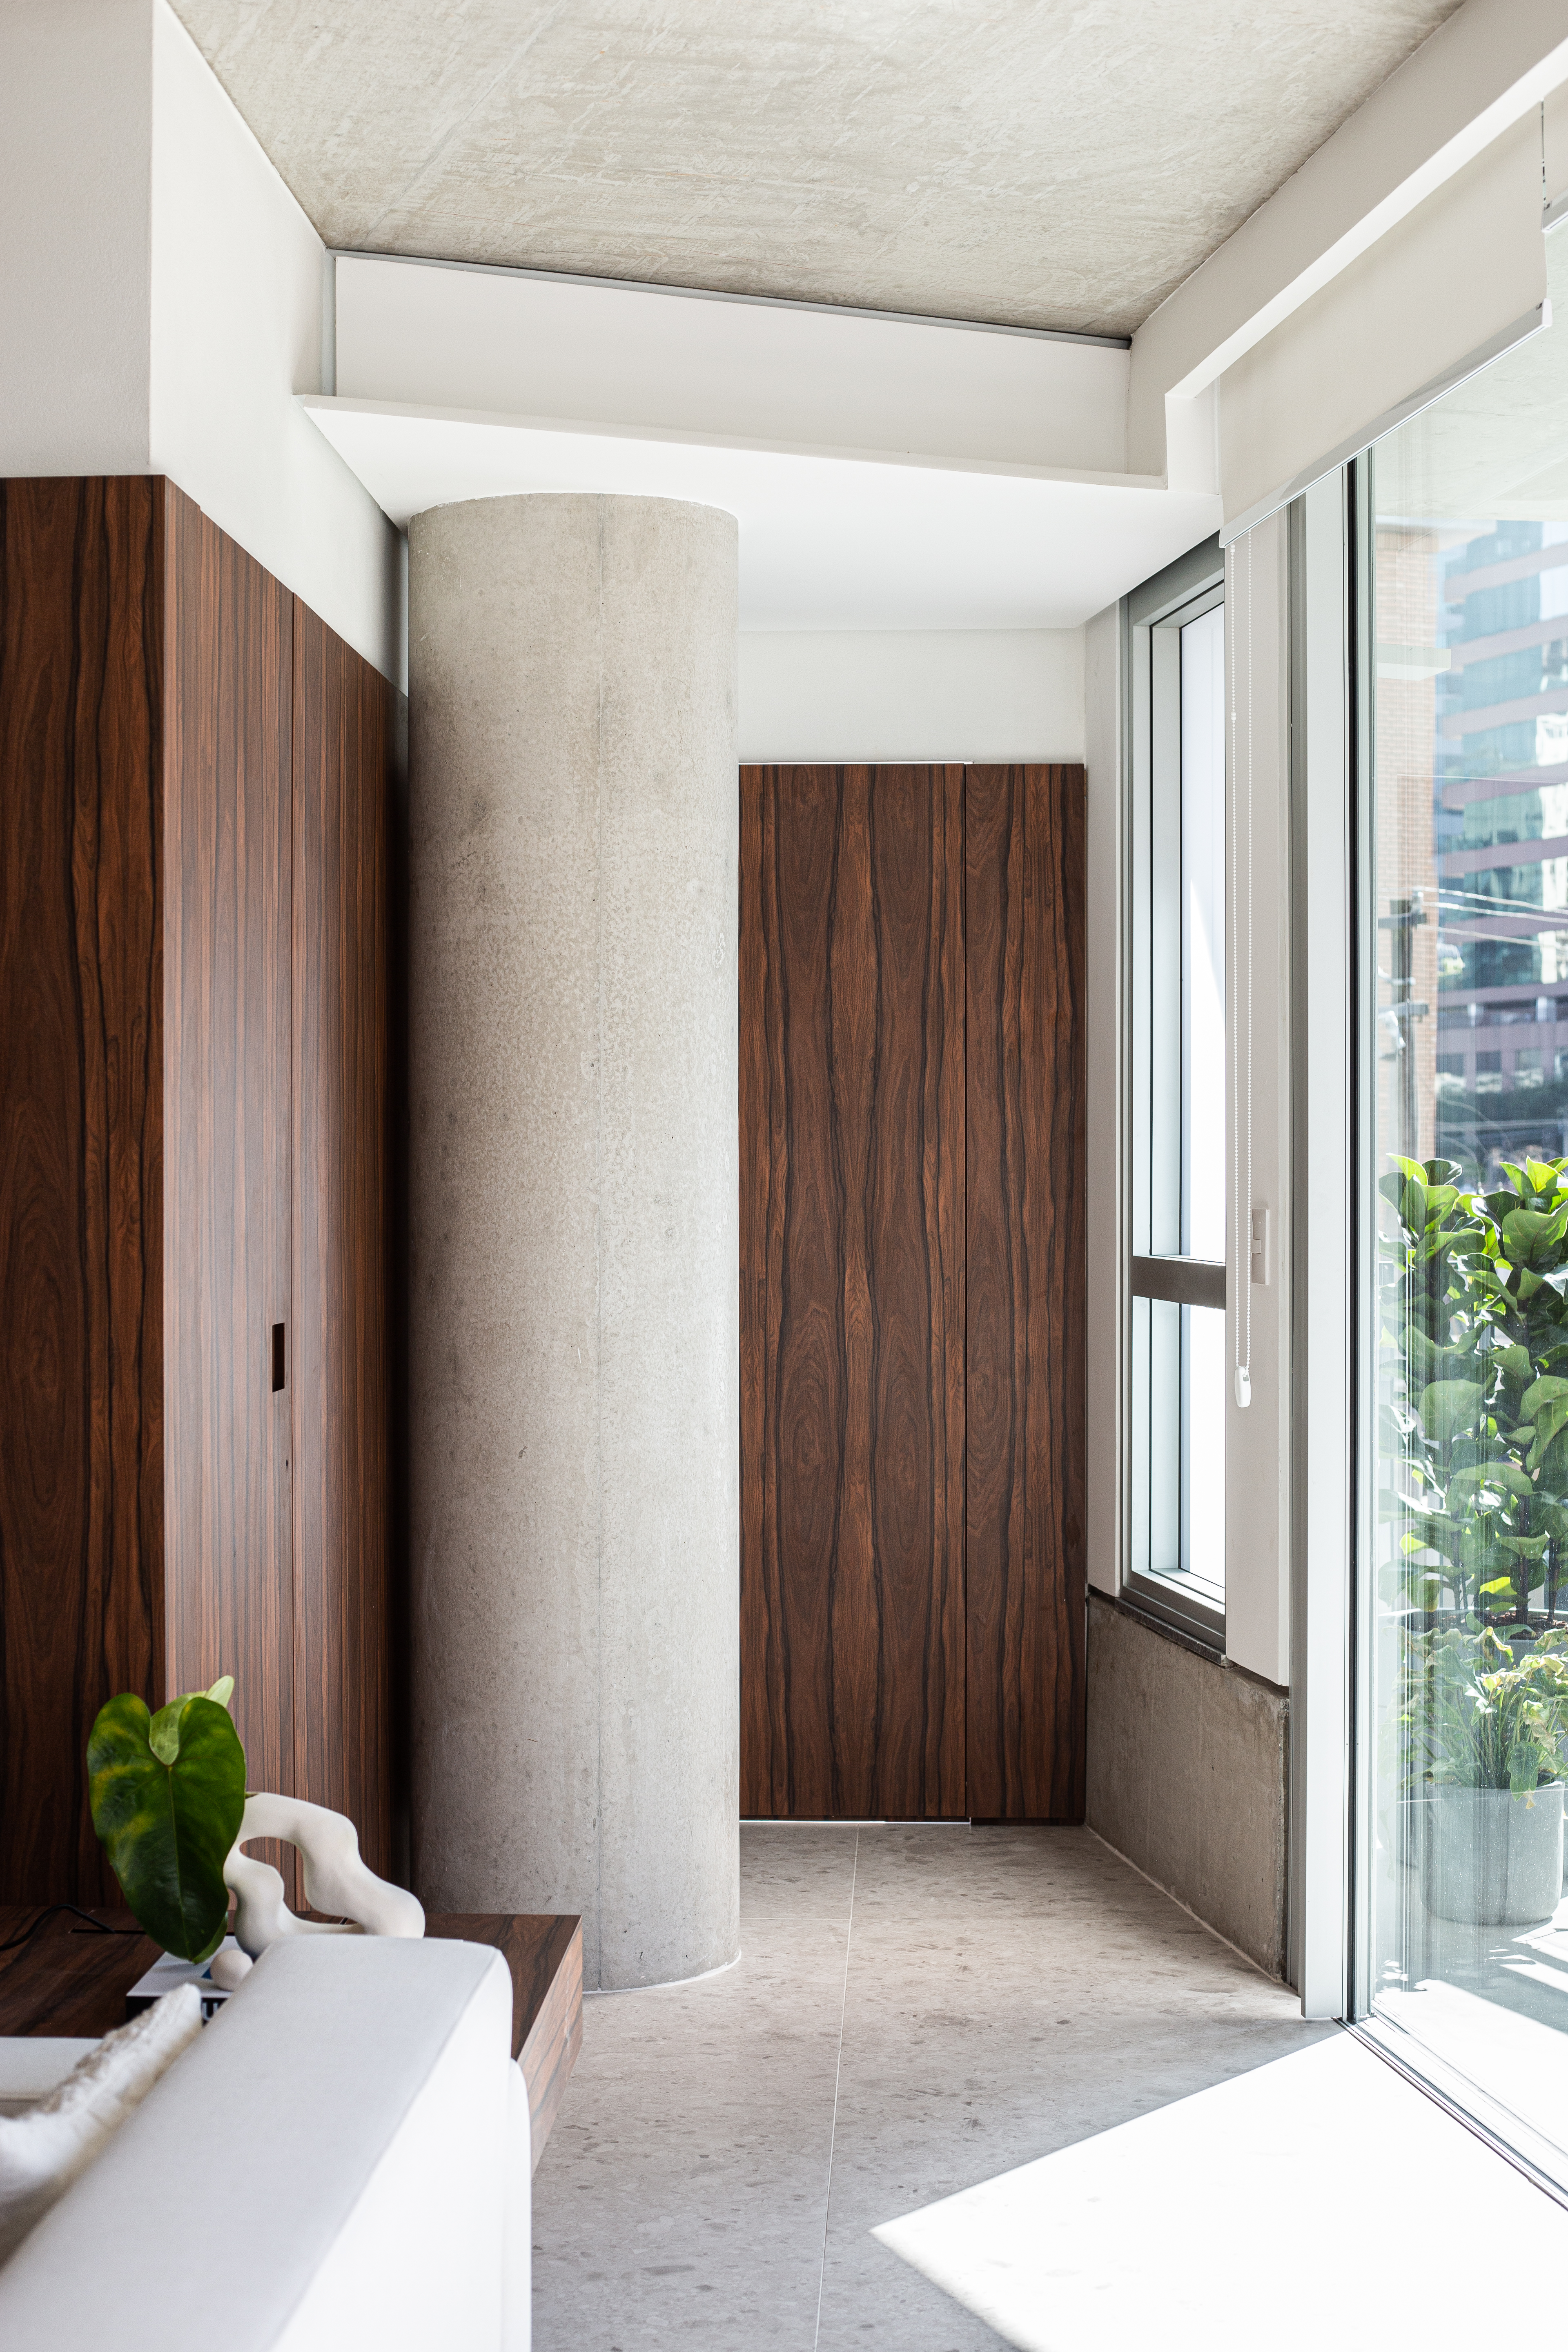 Painéis em madeira pau ferro contrastam com laje de concreto neste apê. Projeto de Estúdio Pluri. Na foto, pilar de concreto.